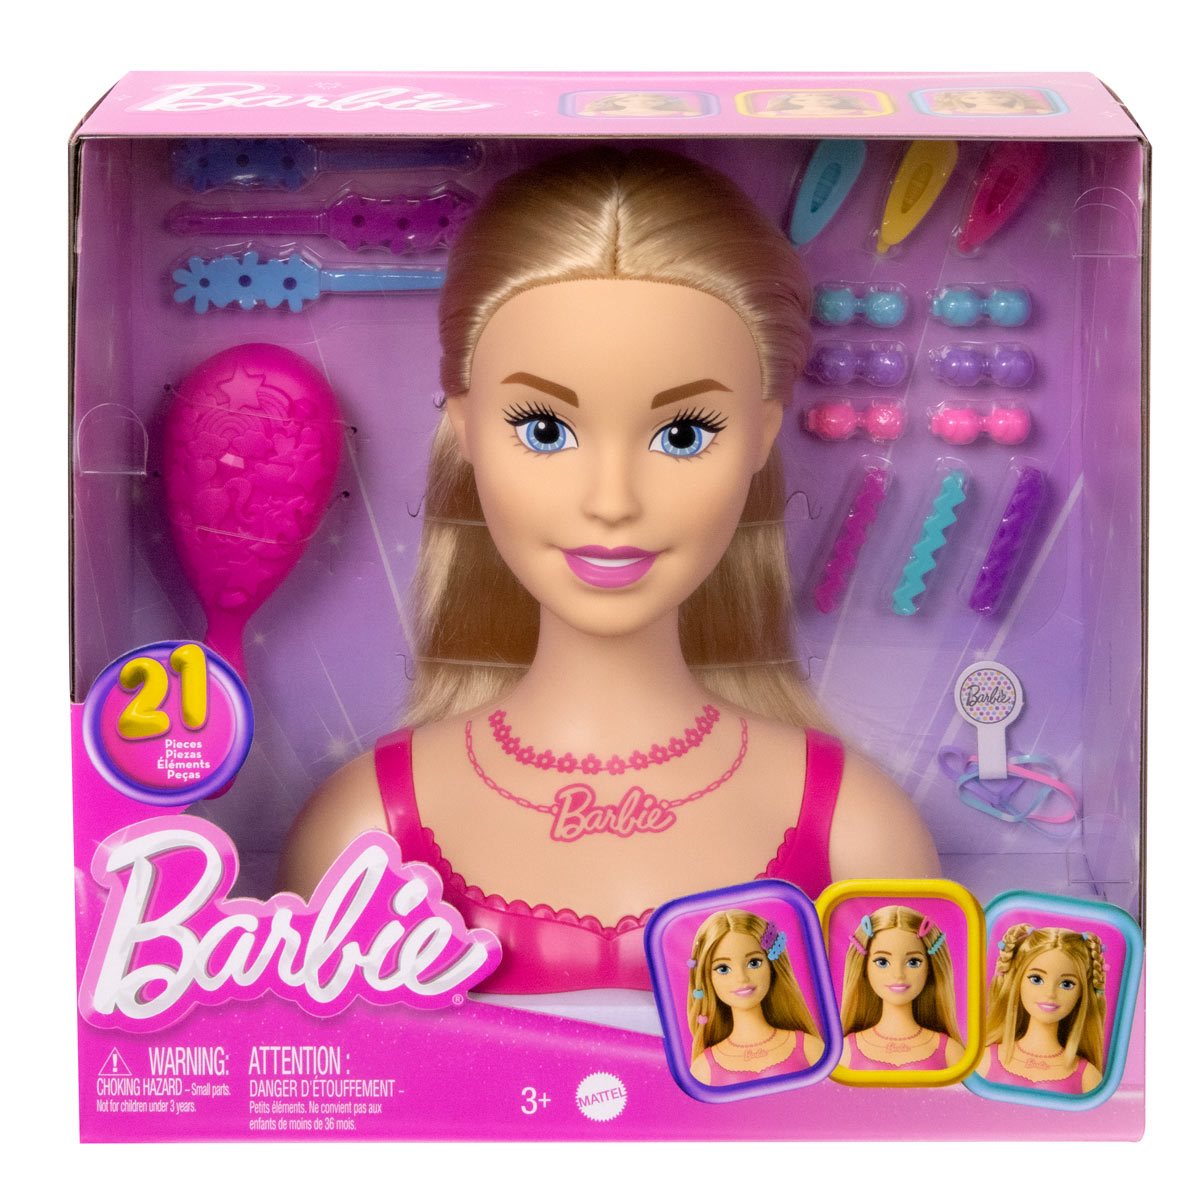 Barbie Styling Head by Mattel